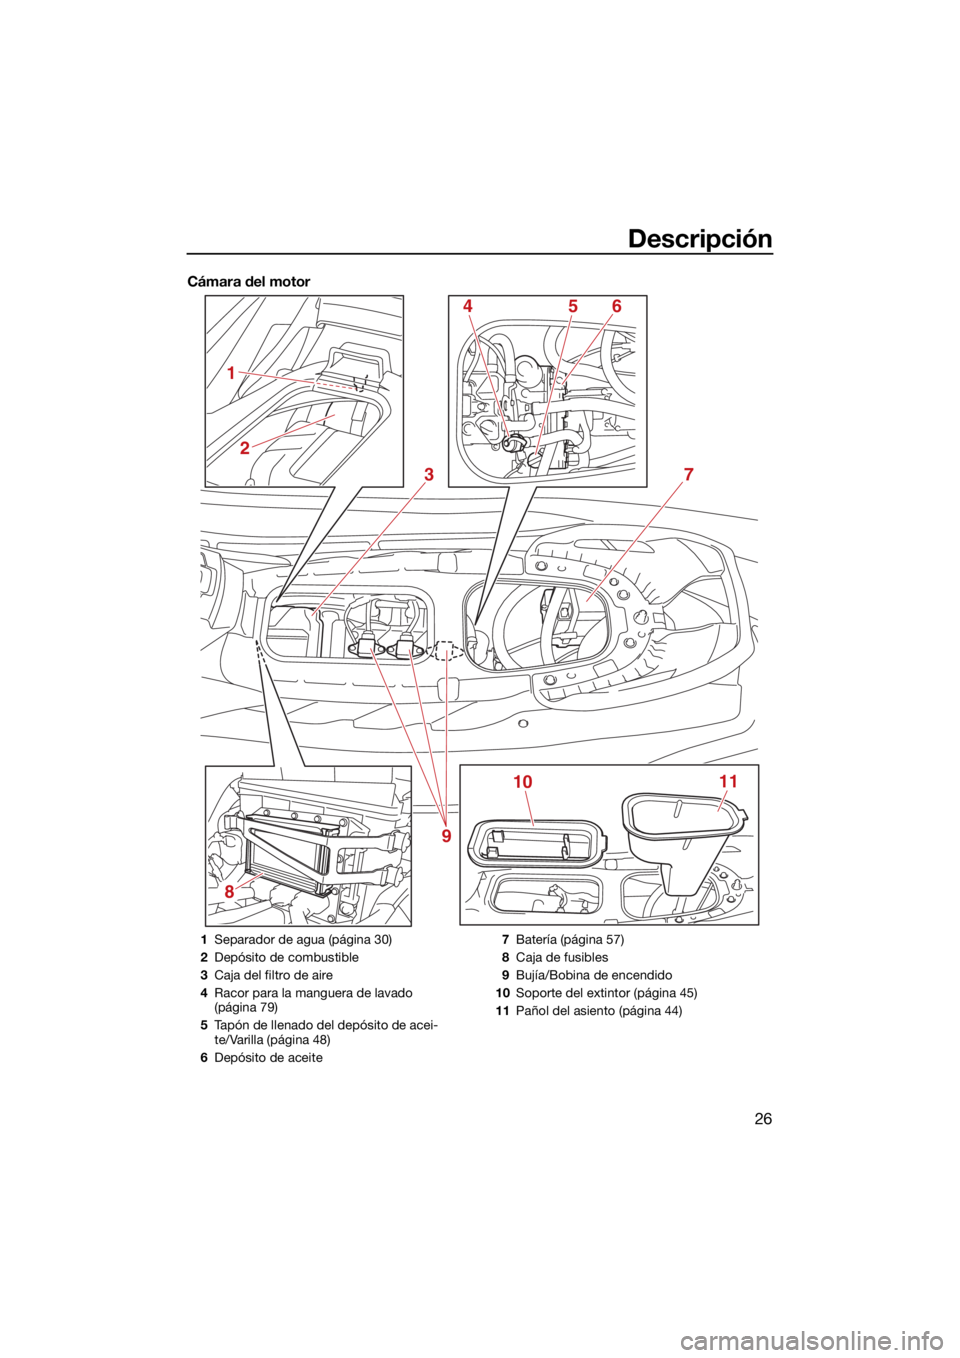 YAMAHA EX SPORT 2021  Manuale de Empleo (in Spanish) Descripción
26
Cámara del motor
8
3
1011
4
2
1
56
7
9
1 Separador de agua (página 30)
2 Depósito de combustible
3 Caja del filtro de aire
4 Racor para la manguera de lavado 
(página 79)
5 Tapón 